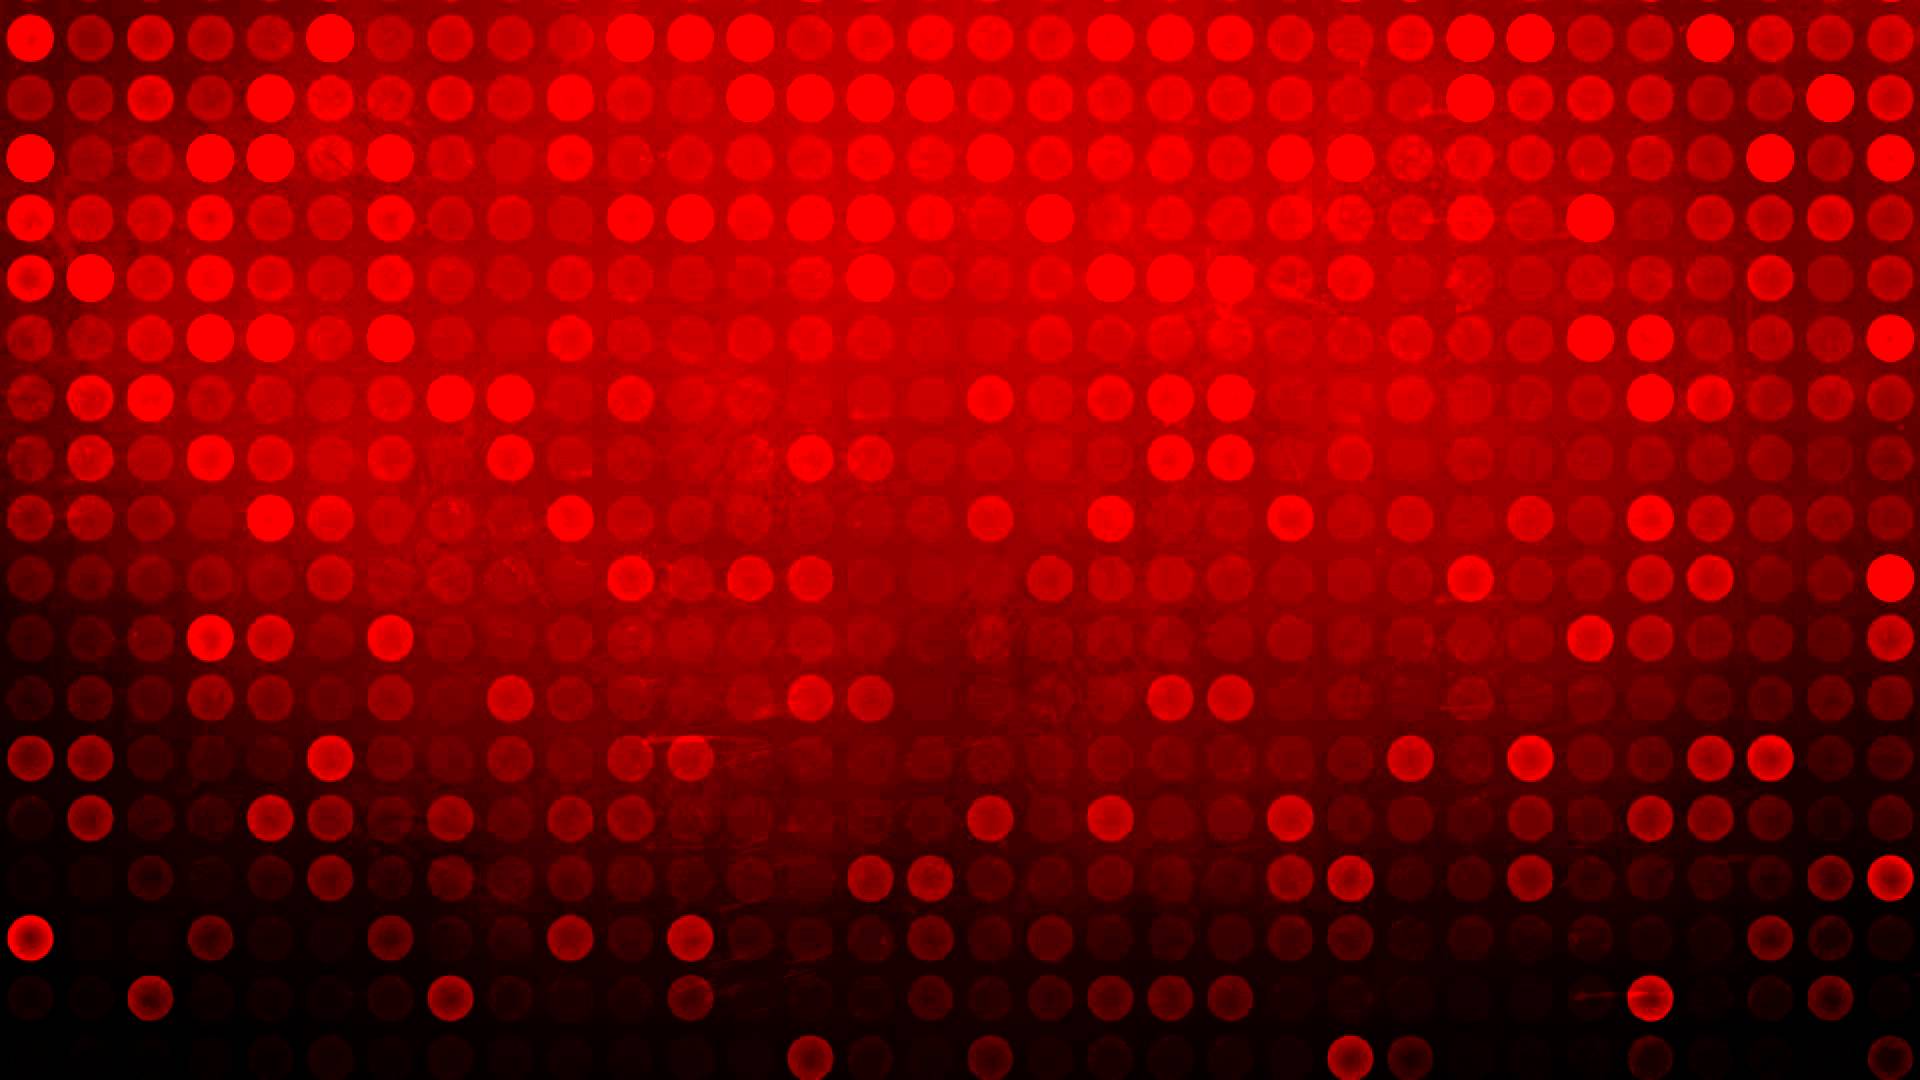 76+] Backgrounds Red - WallpaperSafari